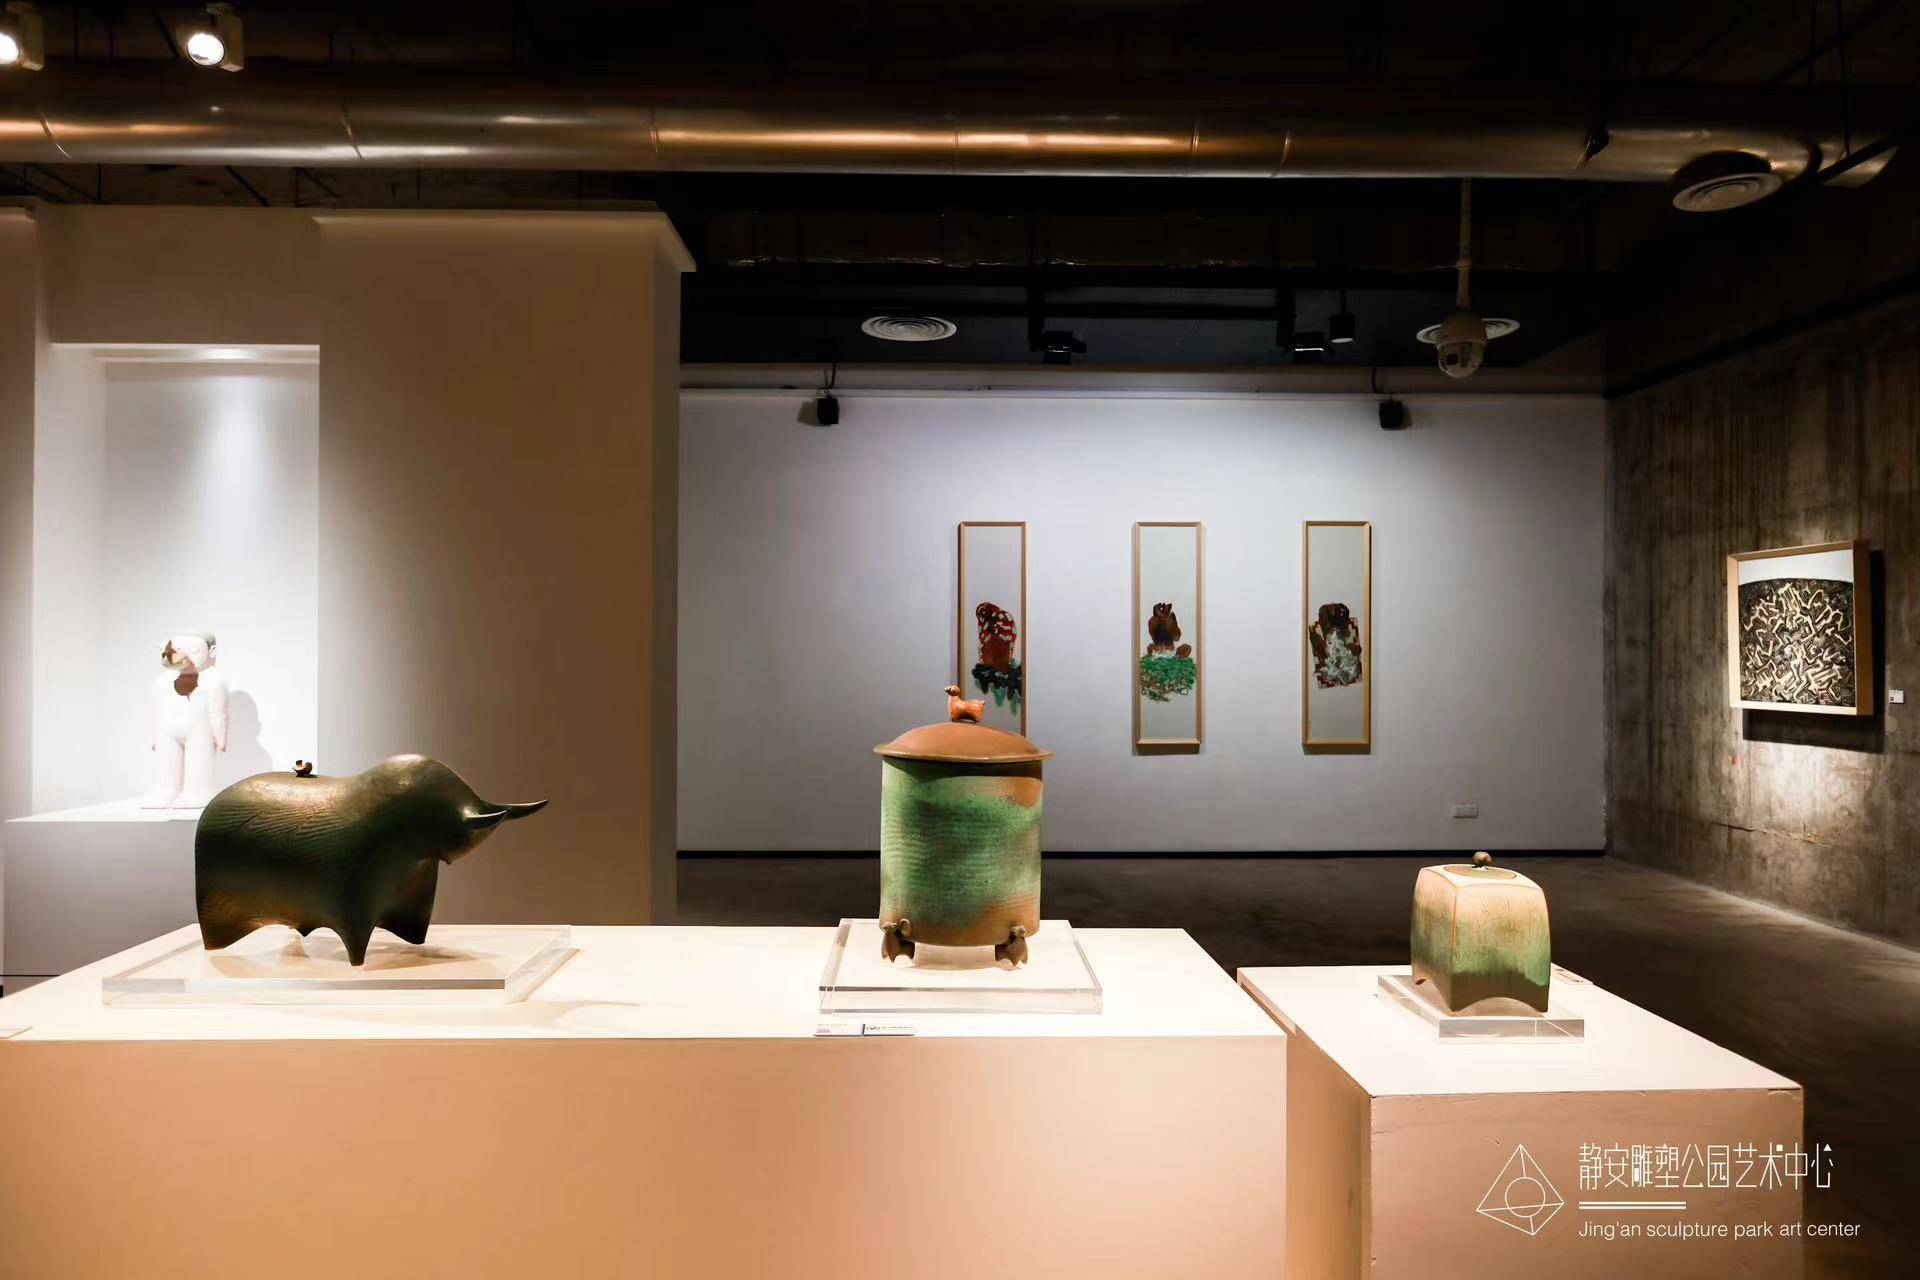 陶瓷艺术与园林式展厅相得益彰,赋予观众全新的视觉体